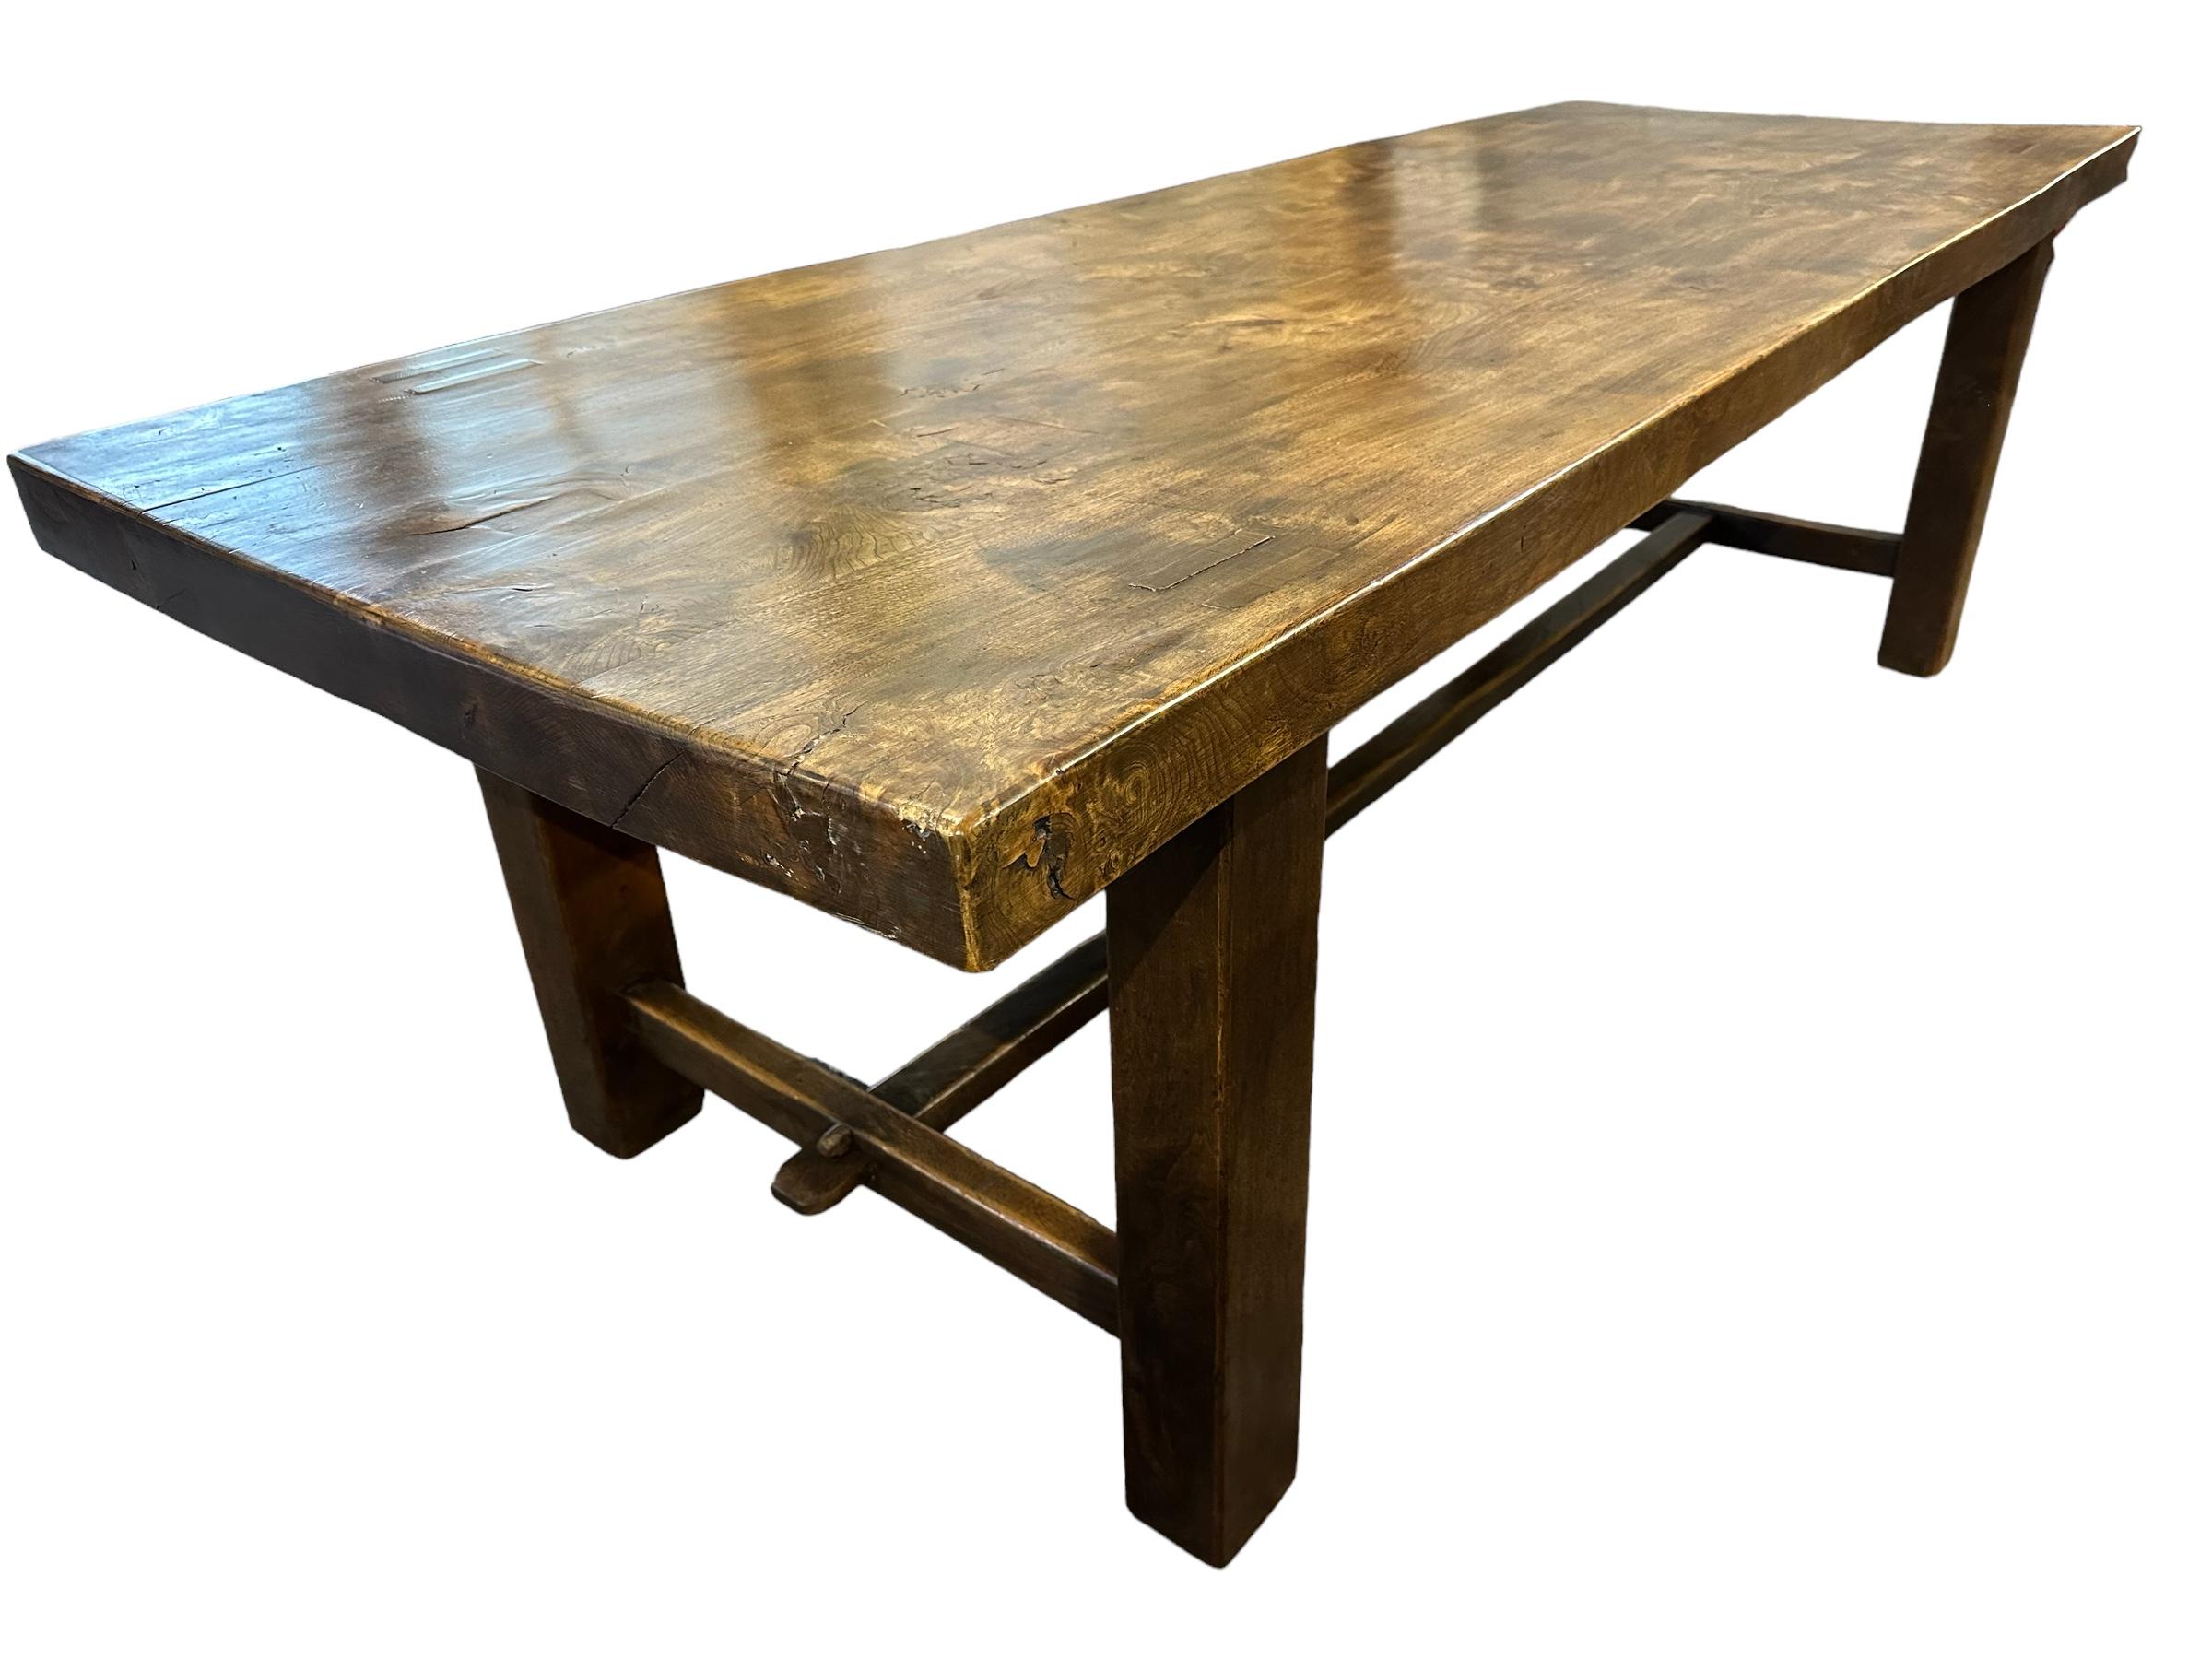 La table normande vintage en orme français est un excellent exemple d'une véritable table normande. La base robuste et les bonnes proportions en font un meuble recherché. Le bel orme foncé avec des figures exquises sur le dessus ajoute à son charme.